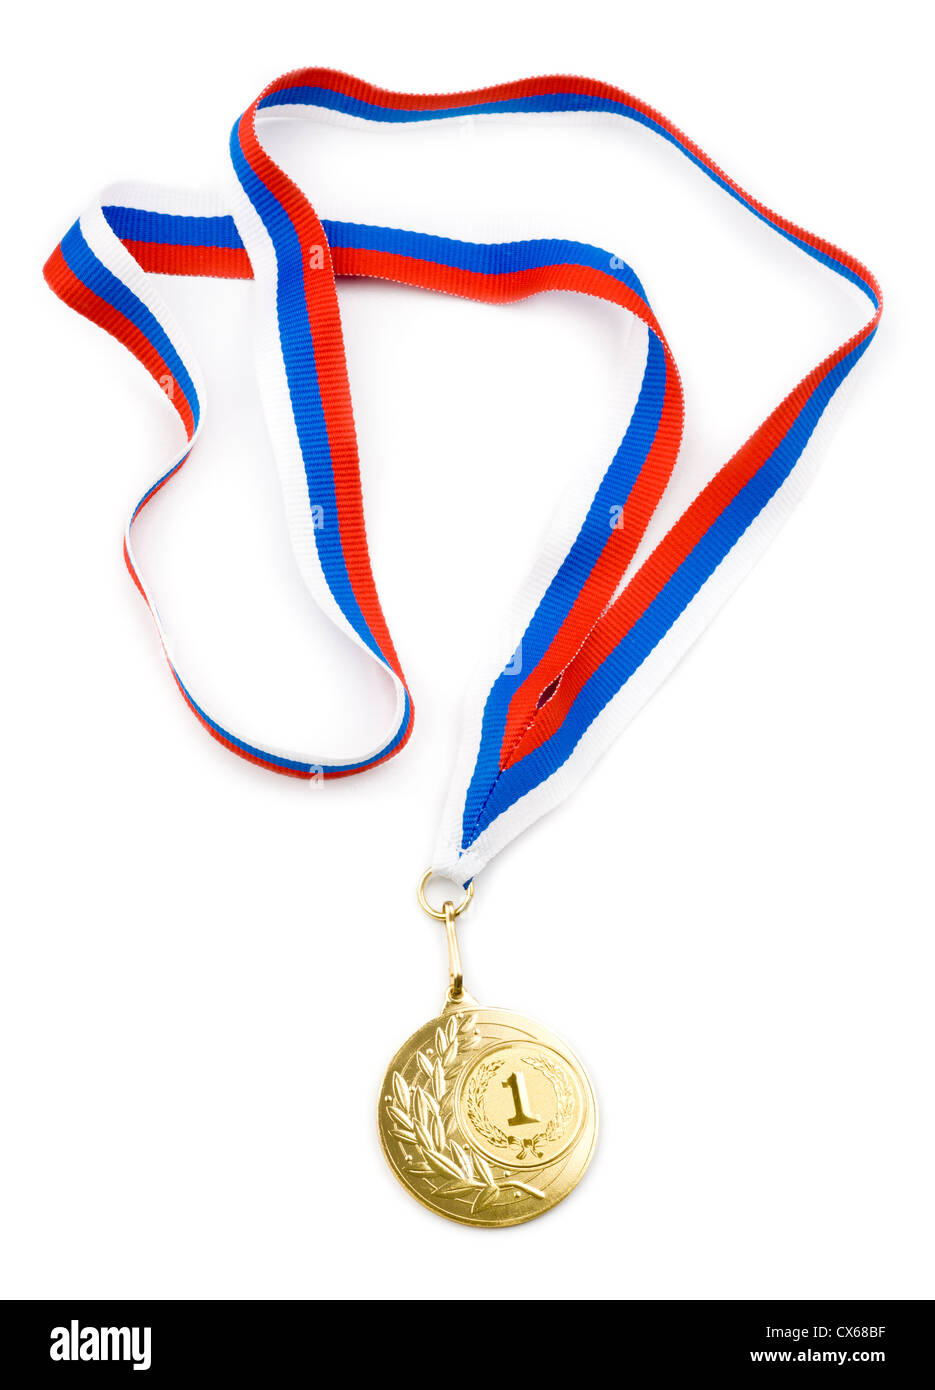 Medalla de oro o el premio con cinta aislada Foto de stock